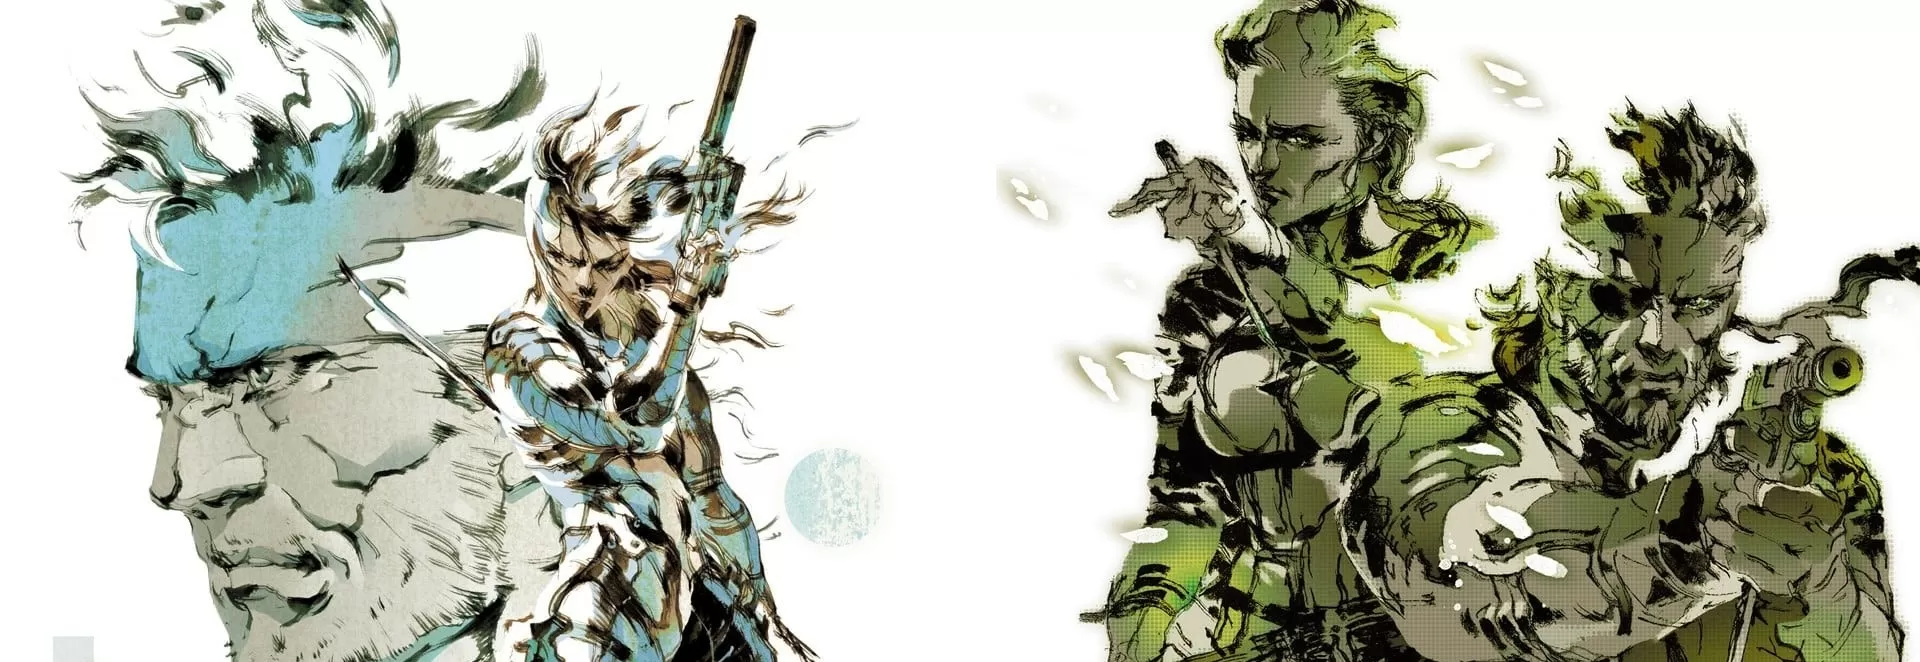 Konami anuncia a remoção de Metal Gear Solid 2 e 3 das lojas digitais